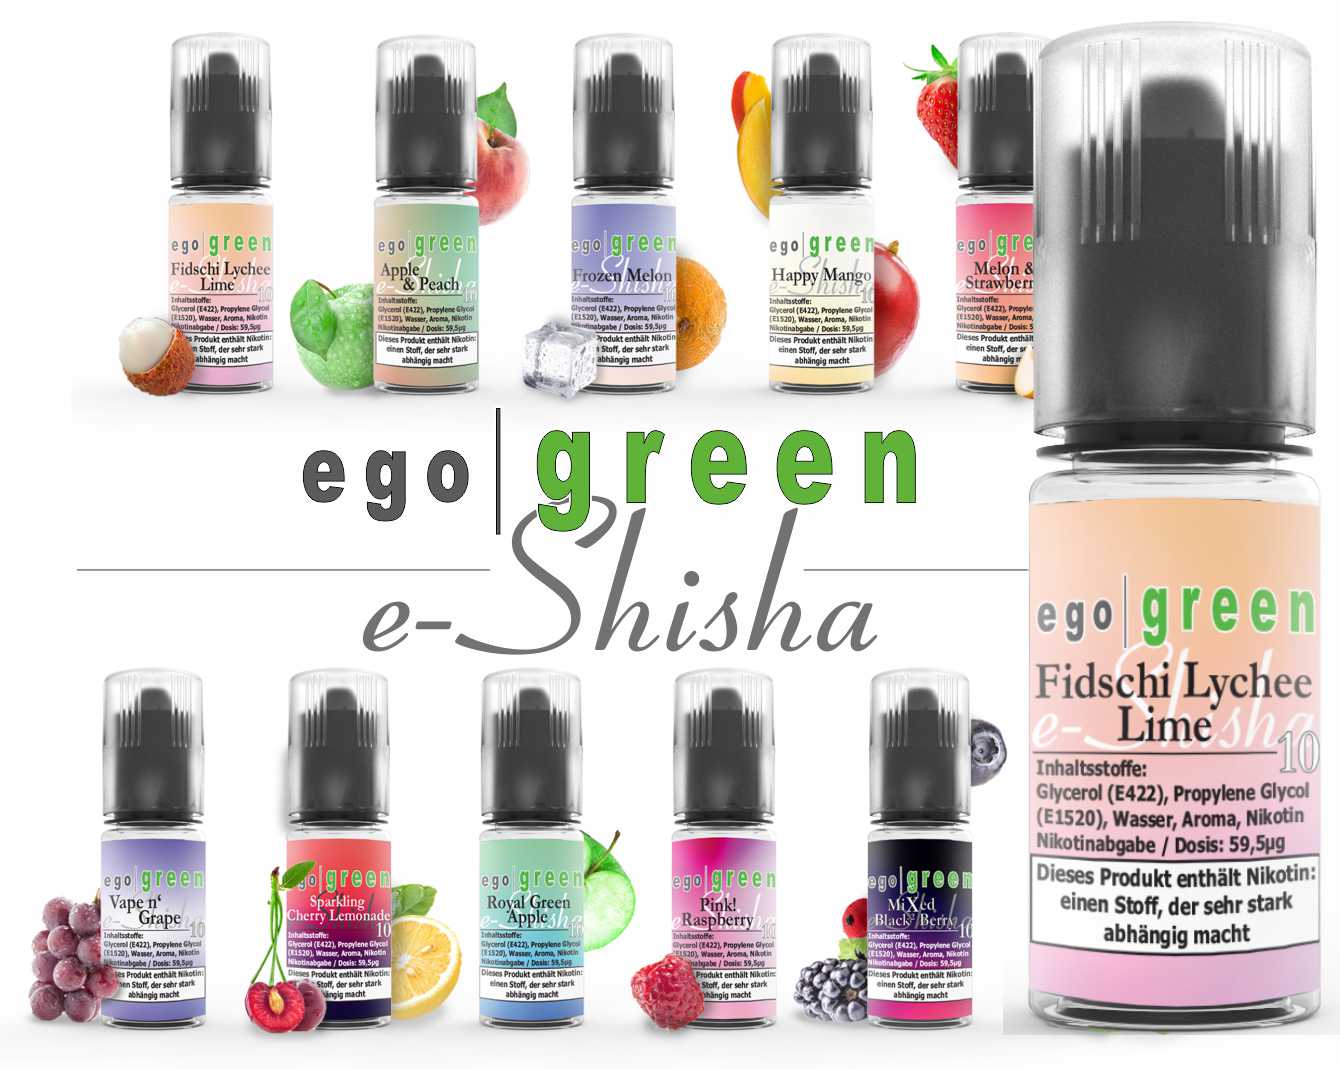 egogreen Fidschi Lychee Lime e-Shisha Nikotinsalz Liquid kaufen